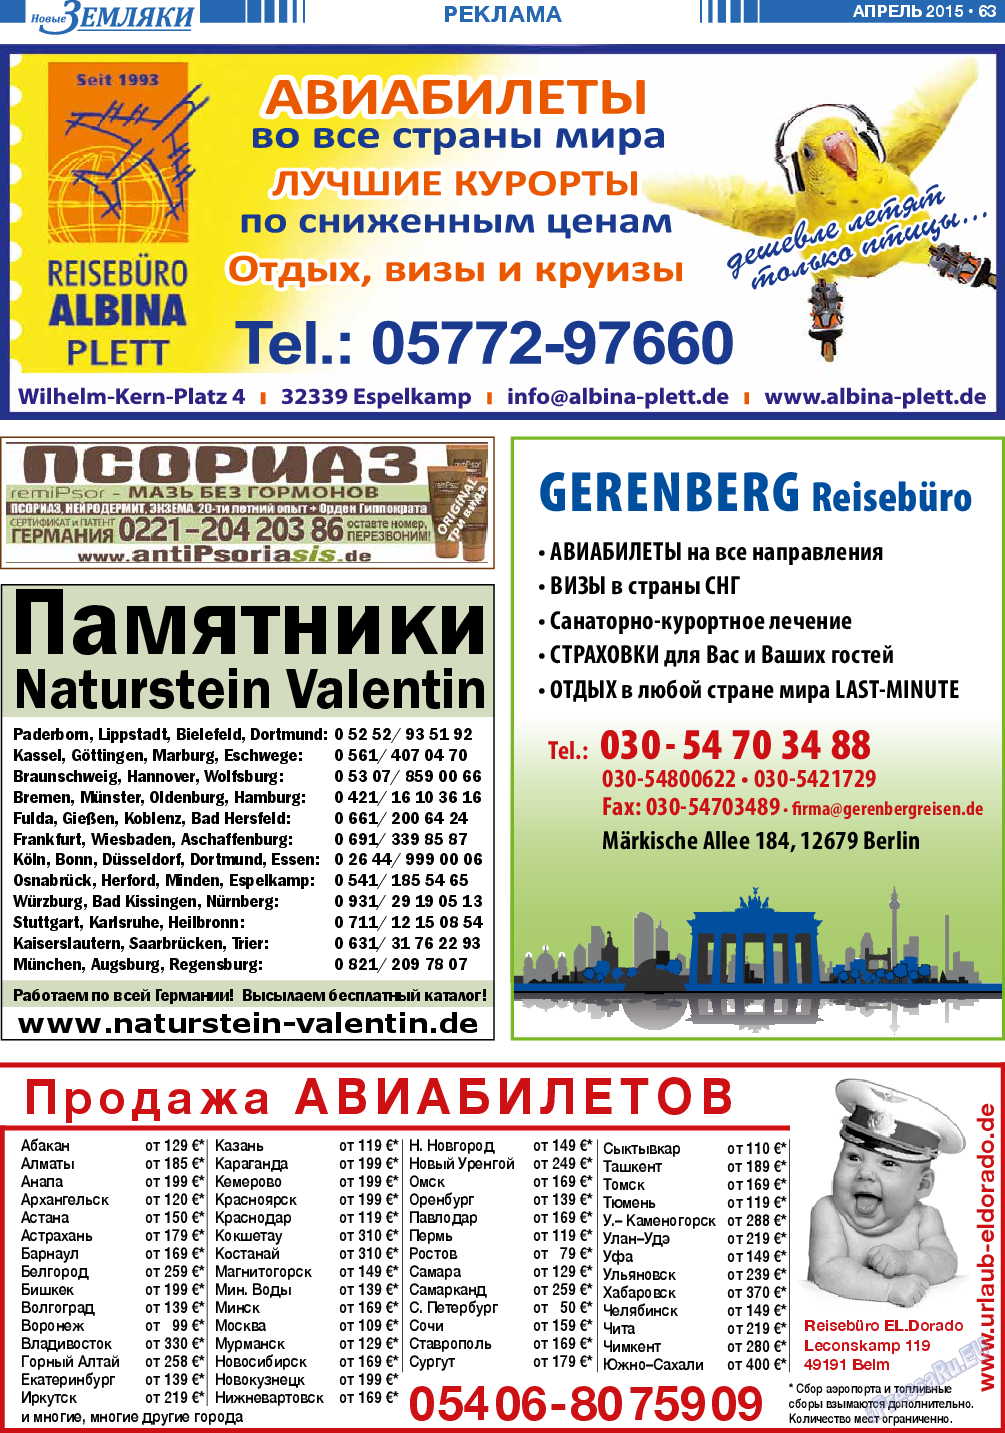 Новые Земляки (газета). 2015 год, номер 4, стр. 63